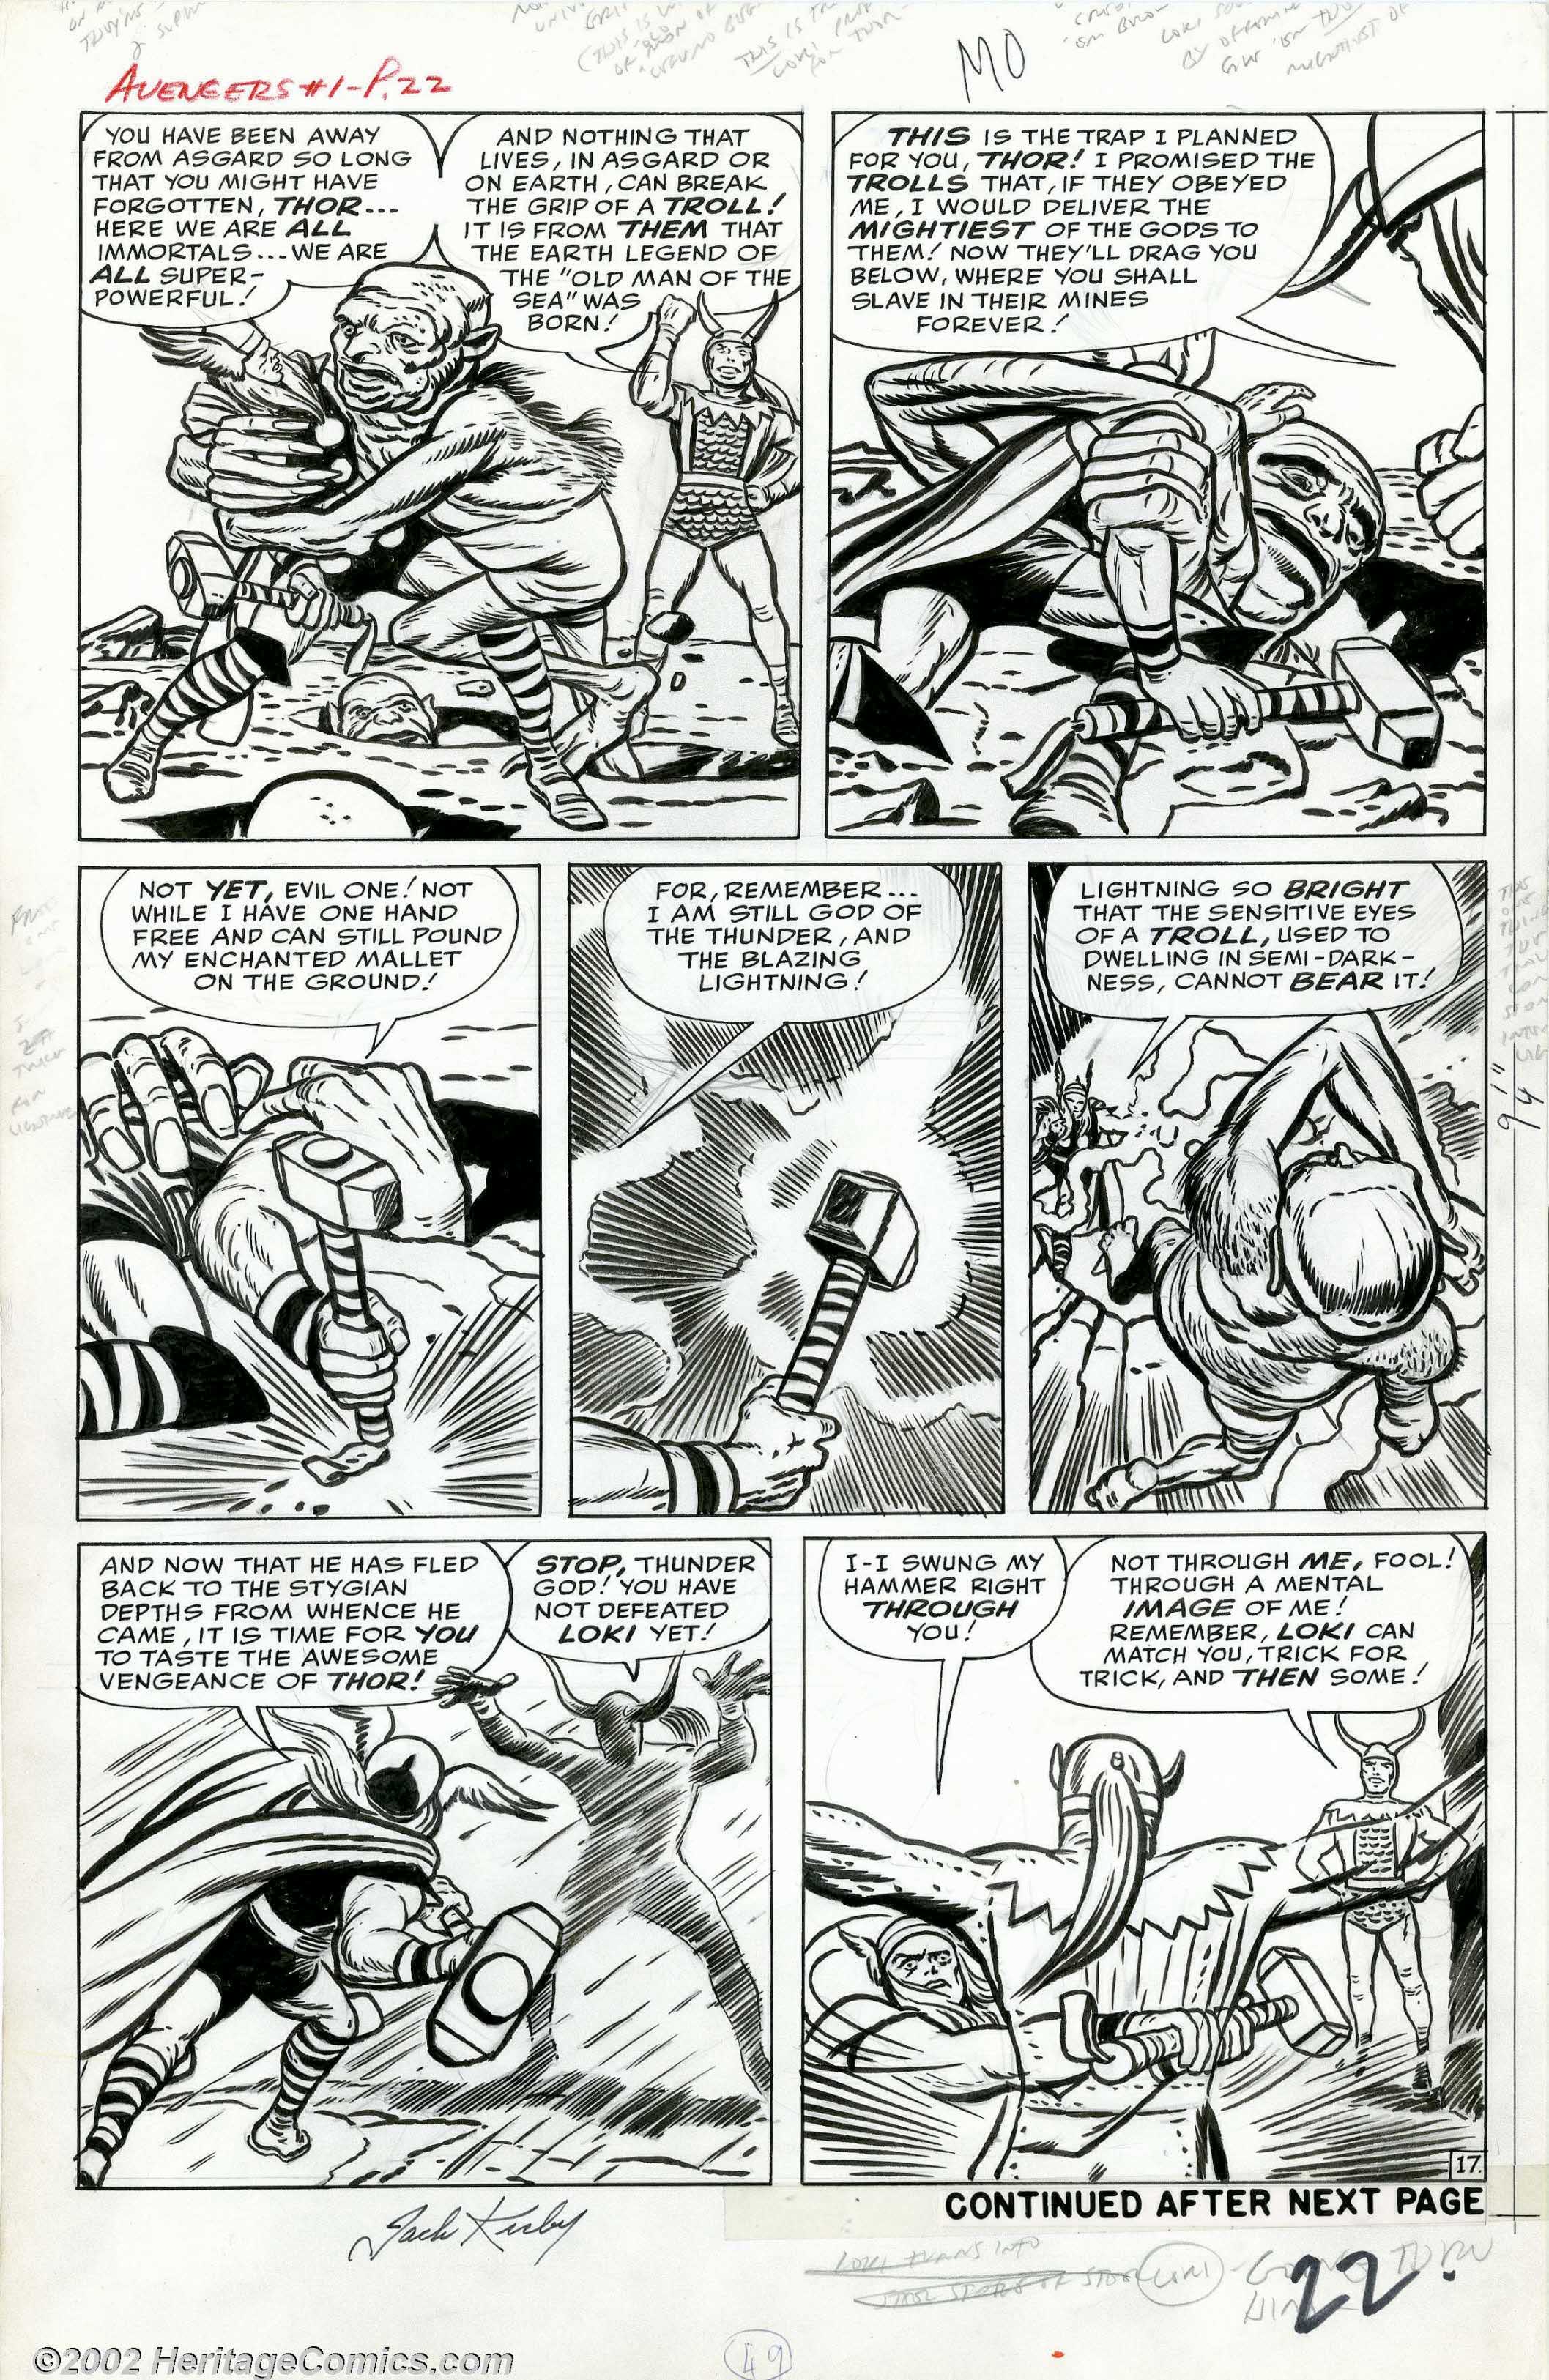 Avengers #1 pg 17